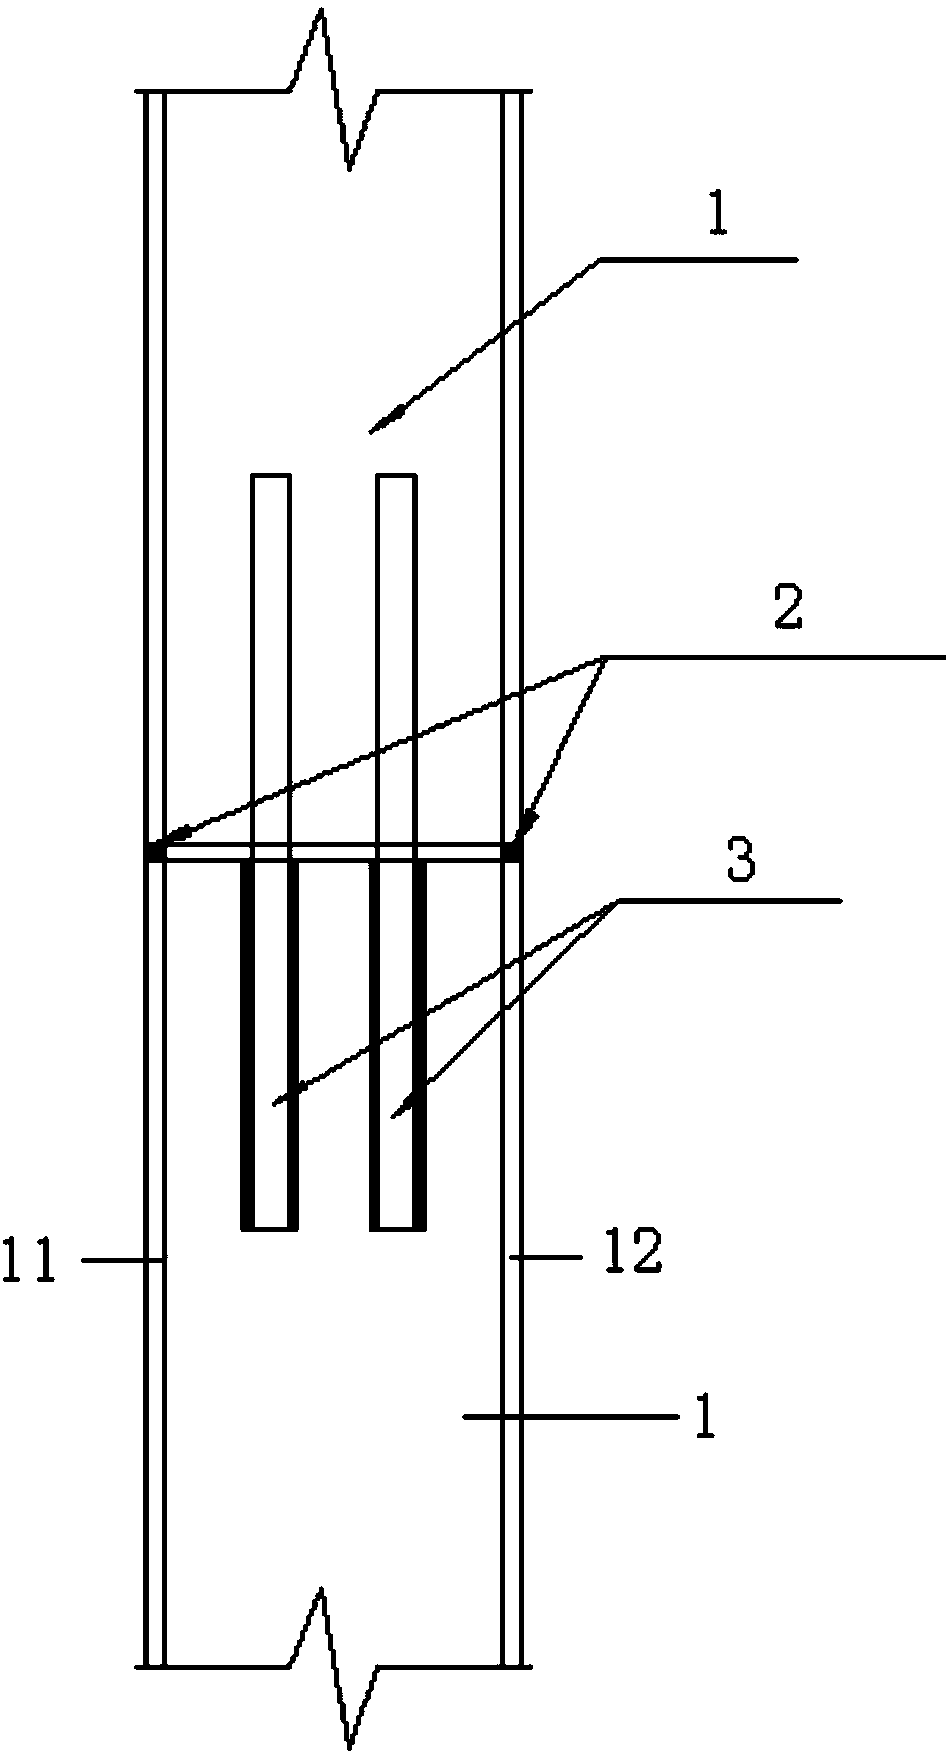 Steel tube bundle composite structure shear wall field splice node